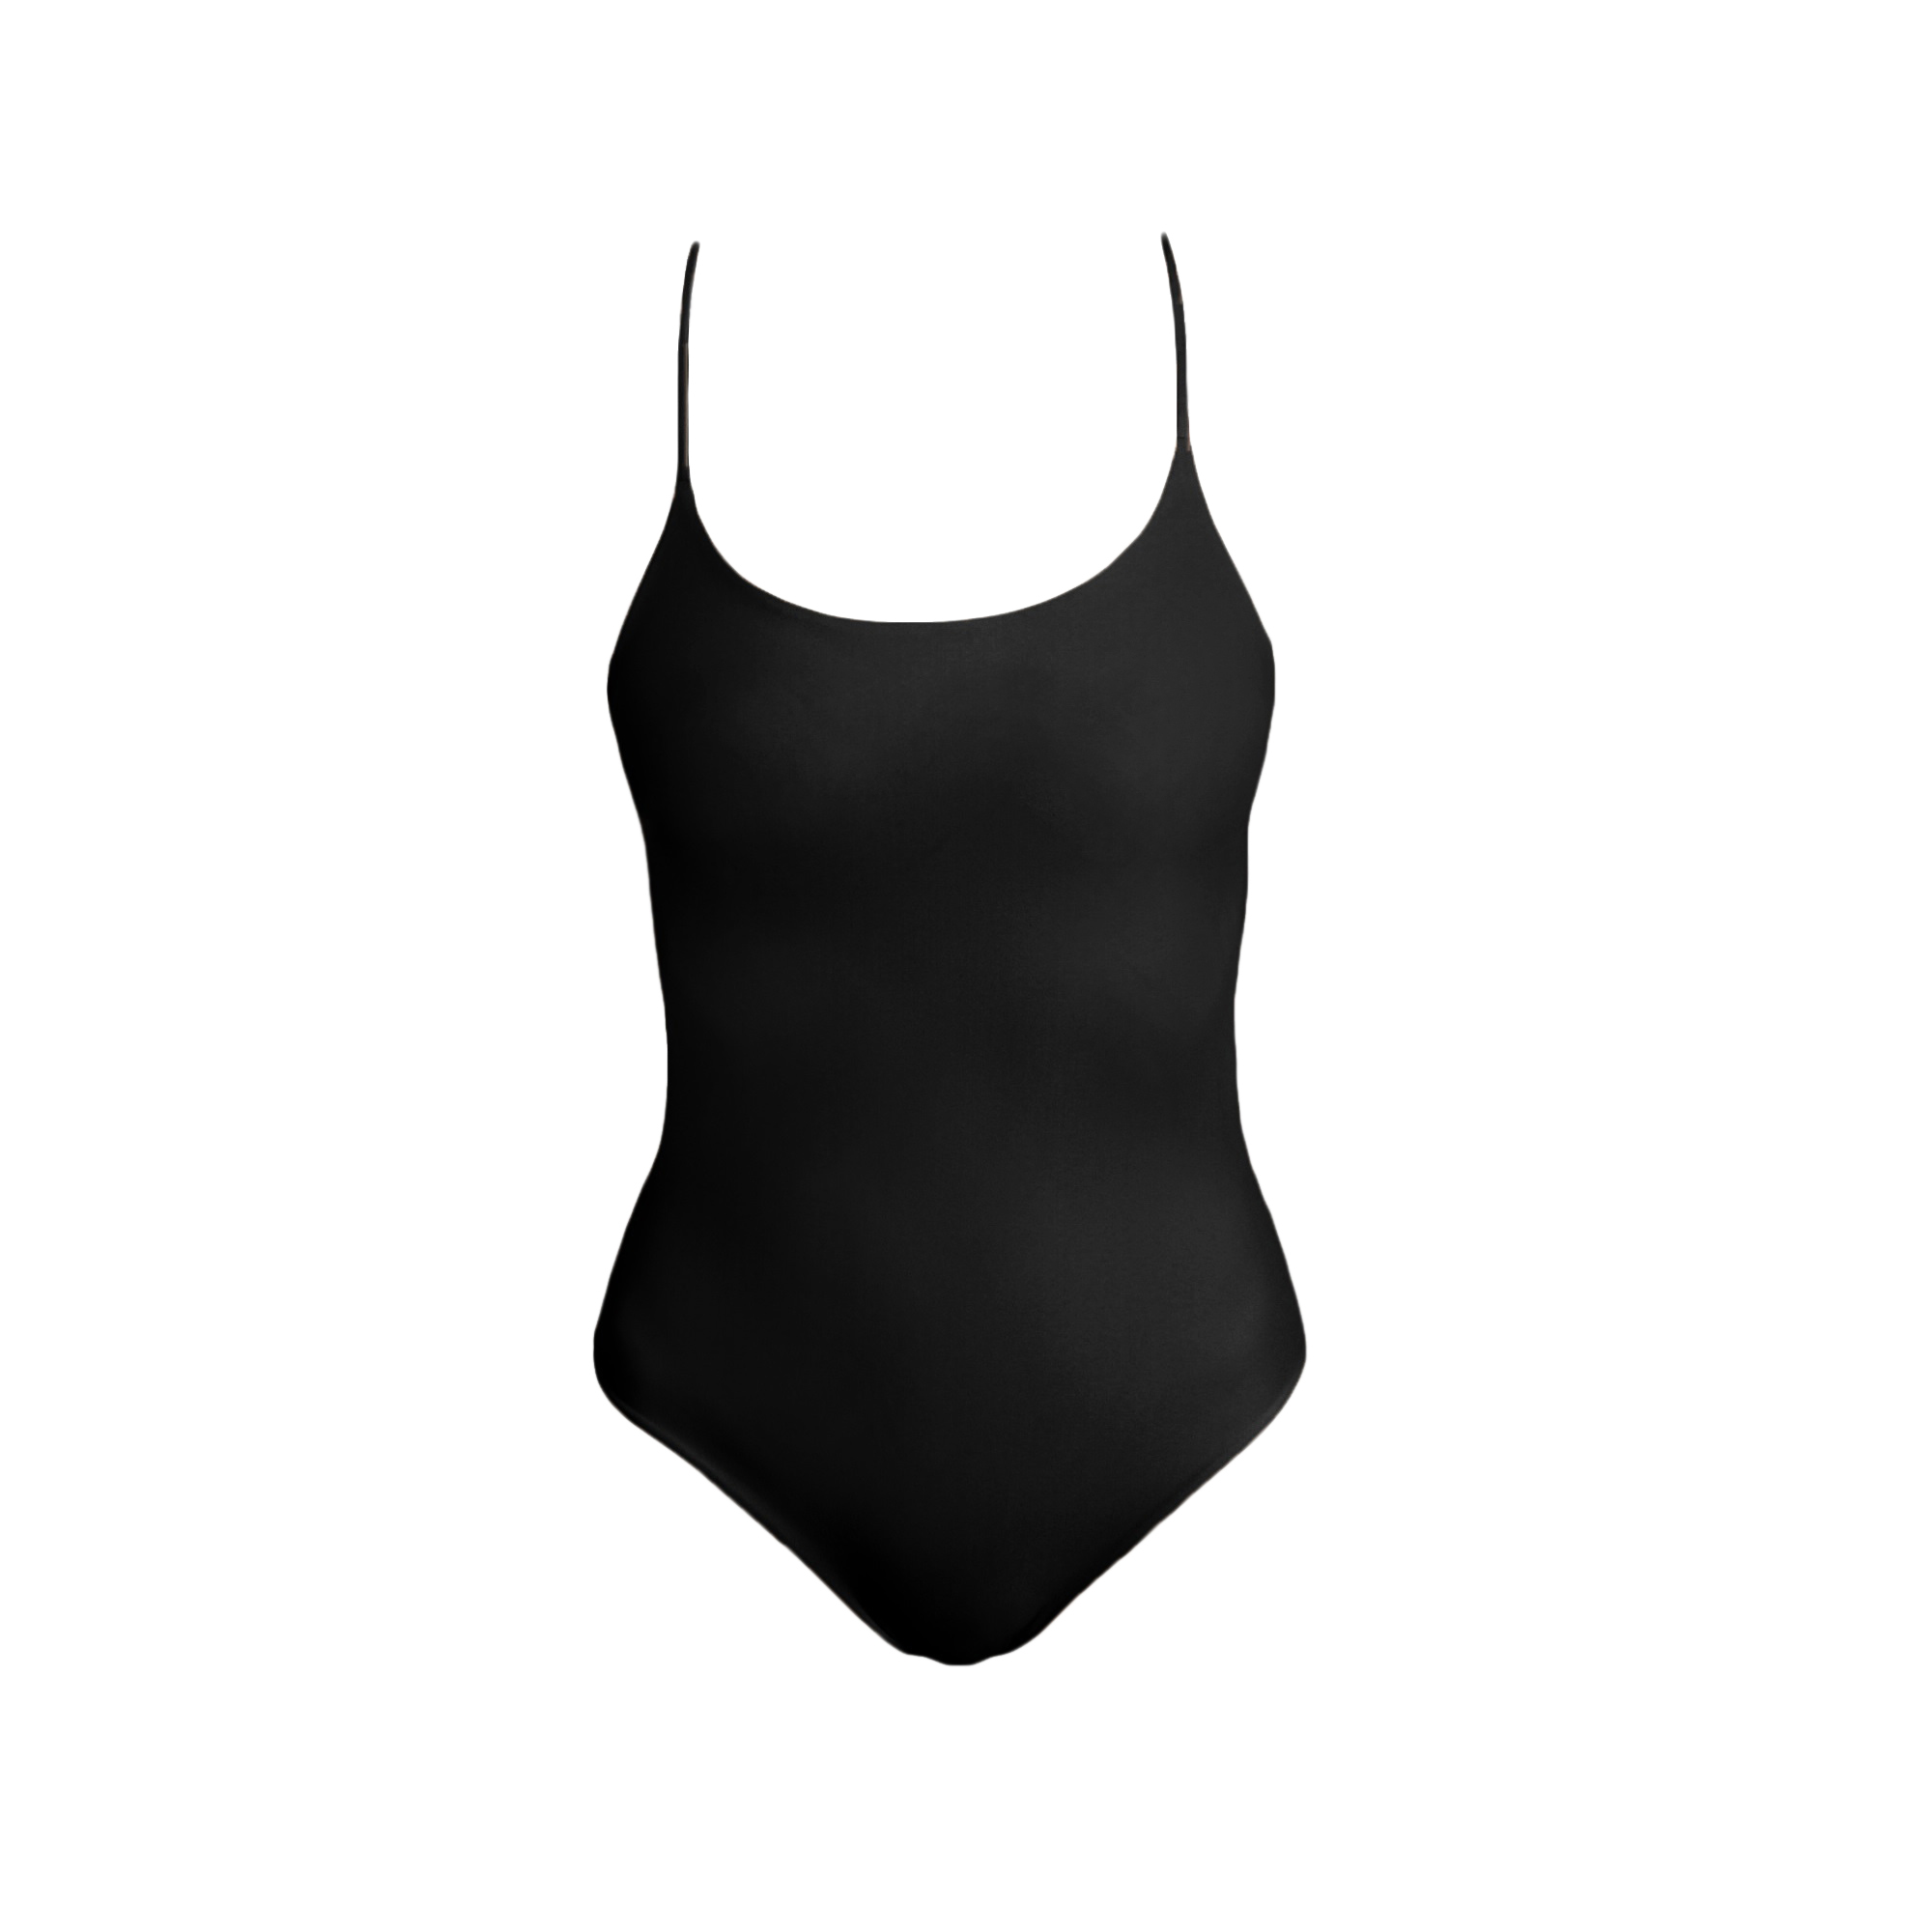 malawi black onepiece swimwear swimsuit spaghetti strap czarny kostium kąpielowy polska marka bikini cienkie ramiączka odkryte plecy